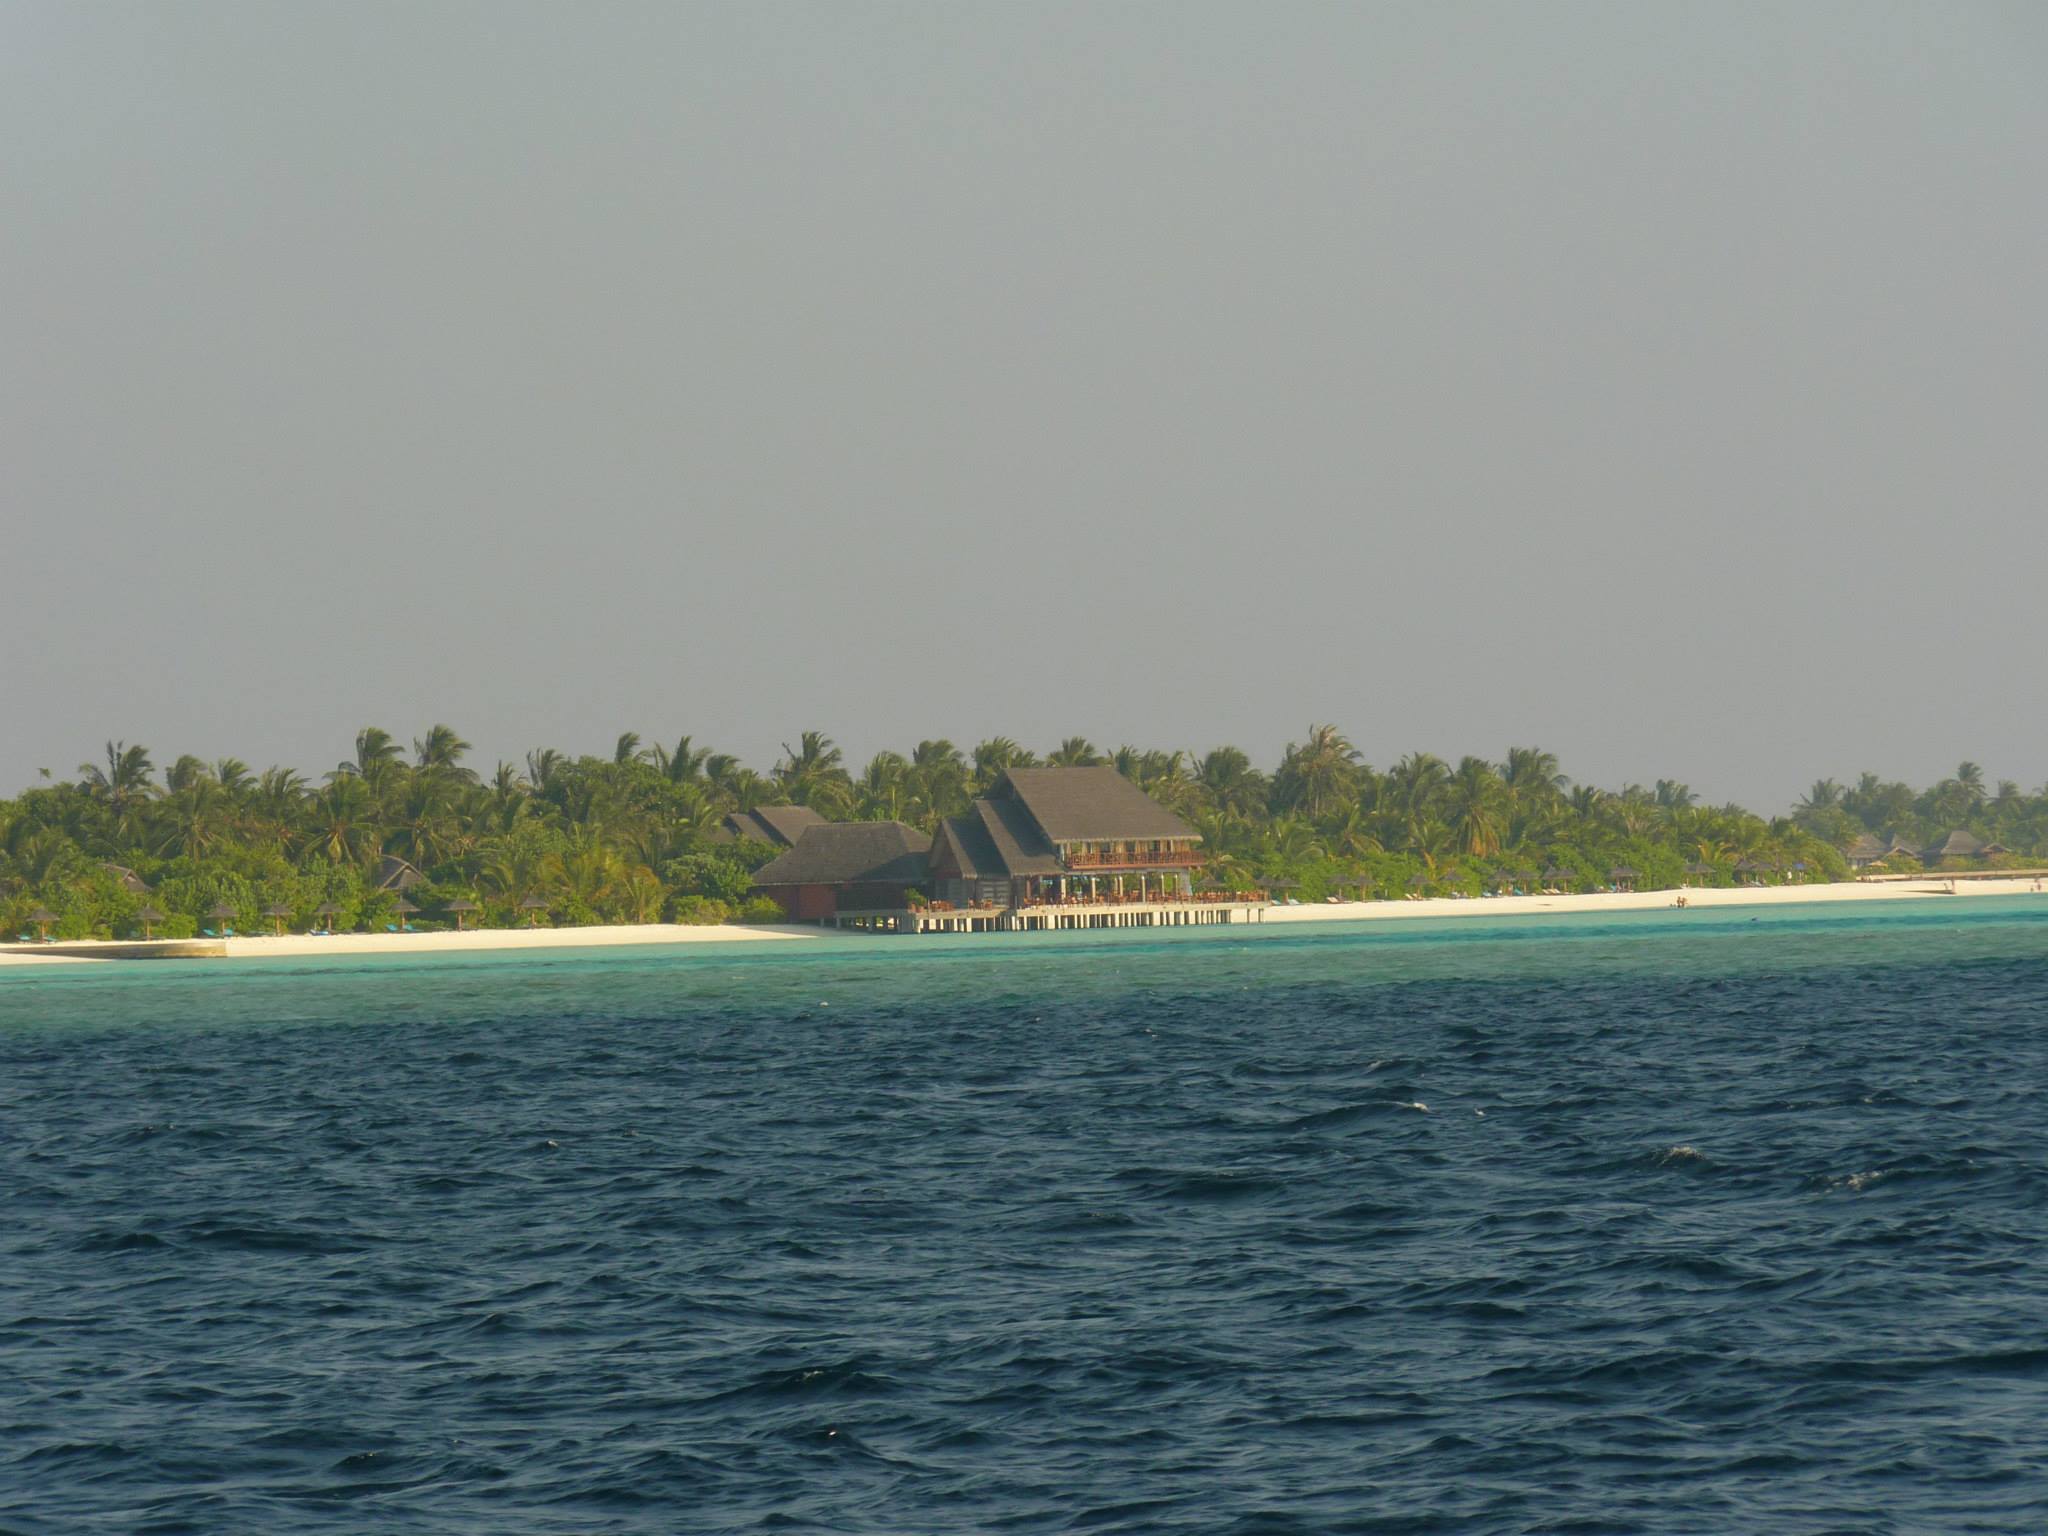 Malediwy029.jpg